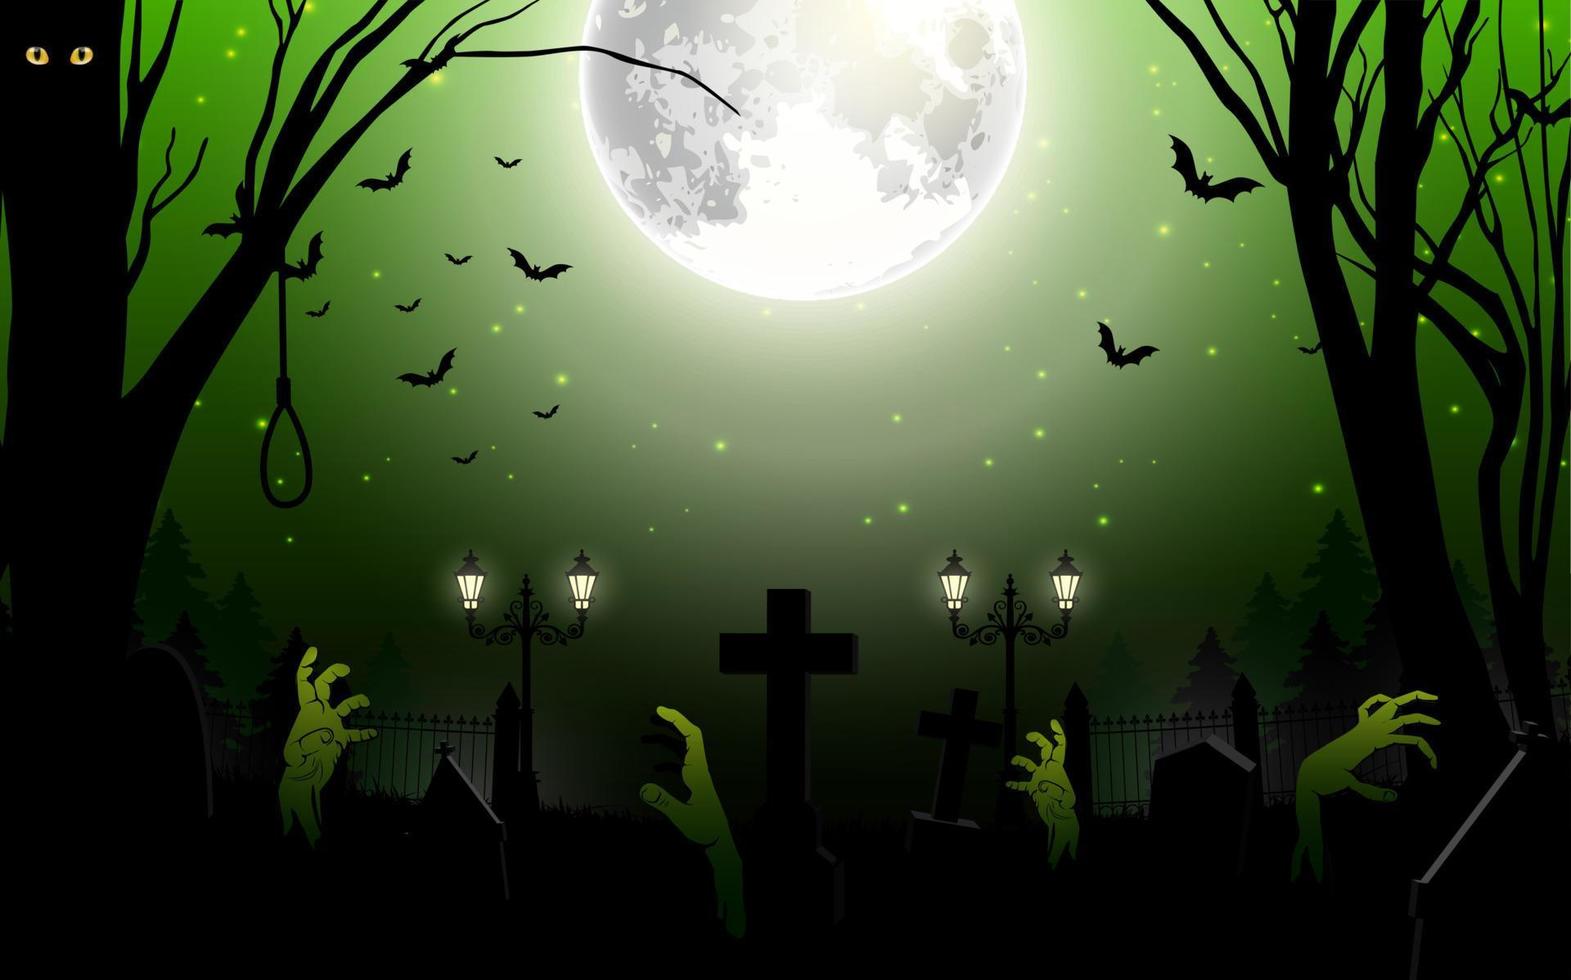 fundo de halloween com zumbi no cemitério na lua cheia. ilustração vetorial vetor